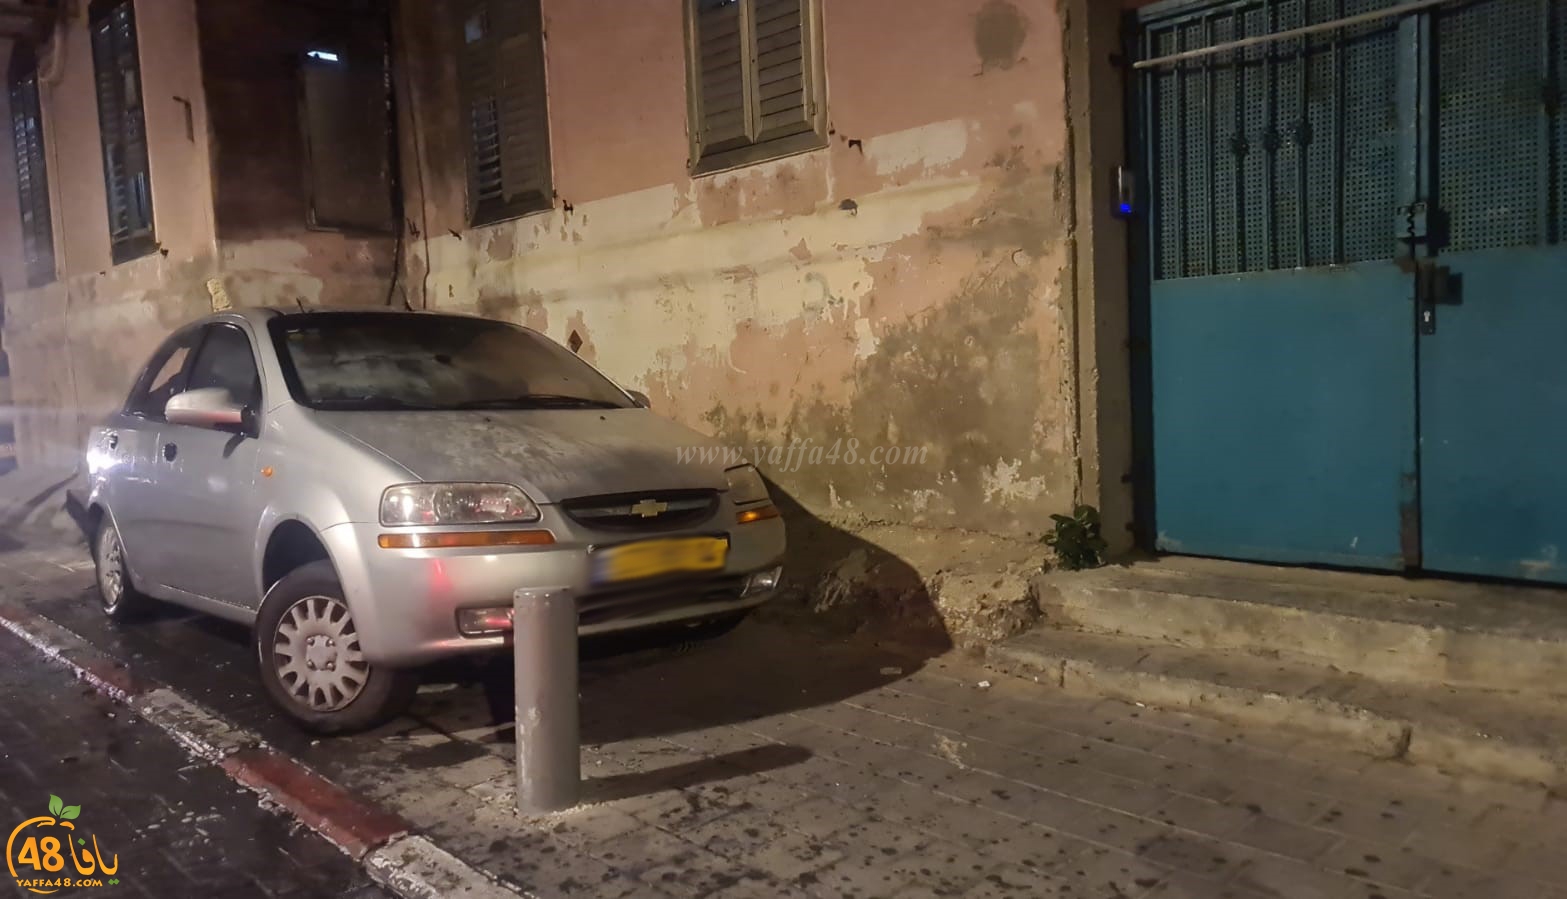  يافا: احتراق مركبة دون الابلاغ عن وقوع اصابات